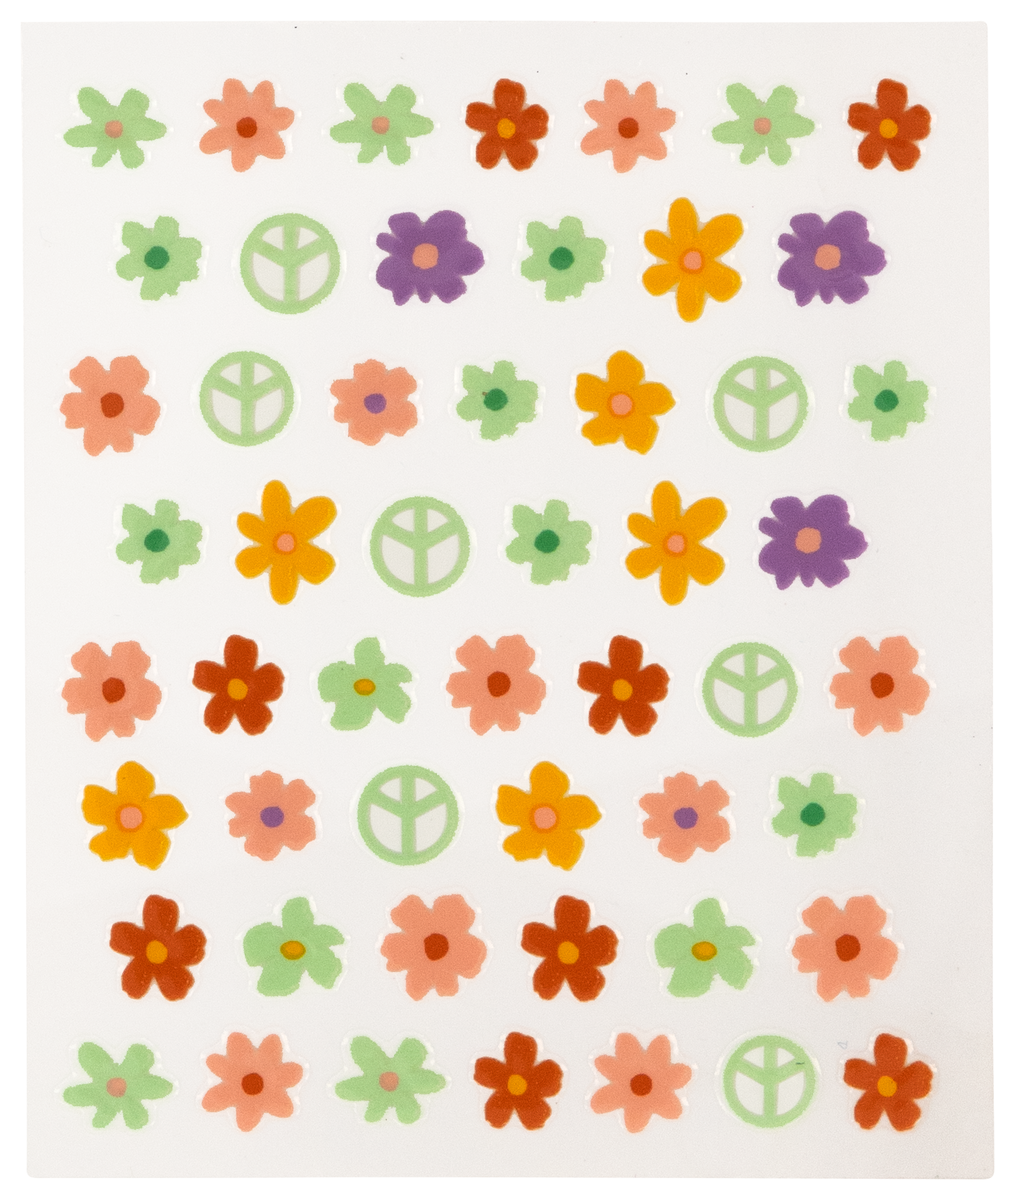 nagelstickers bloemen - 52 stuks - 11240176 - HEMA